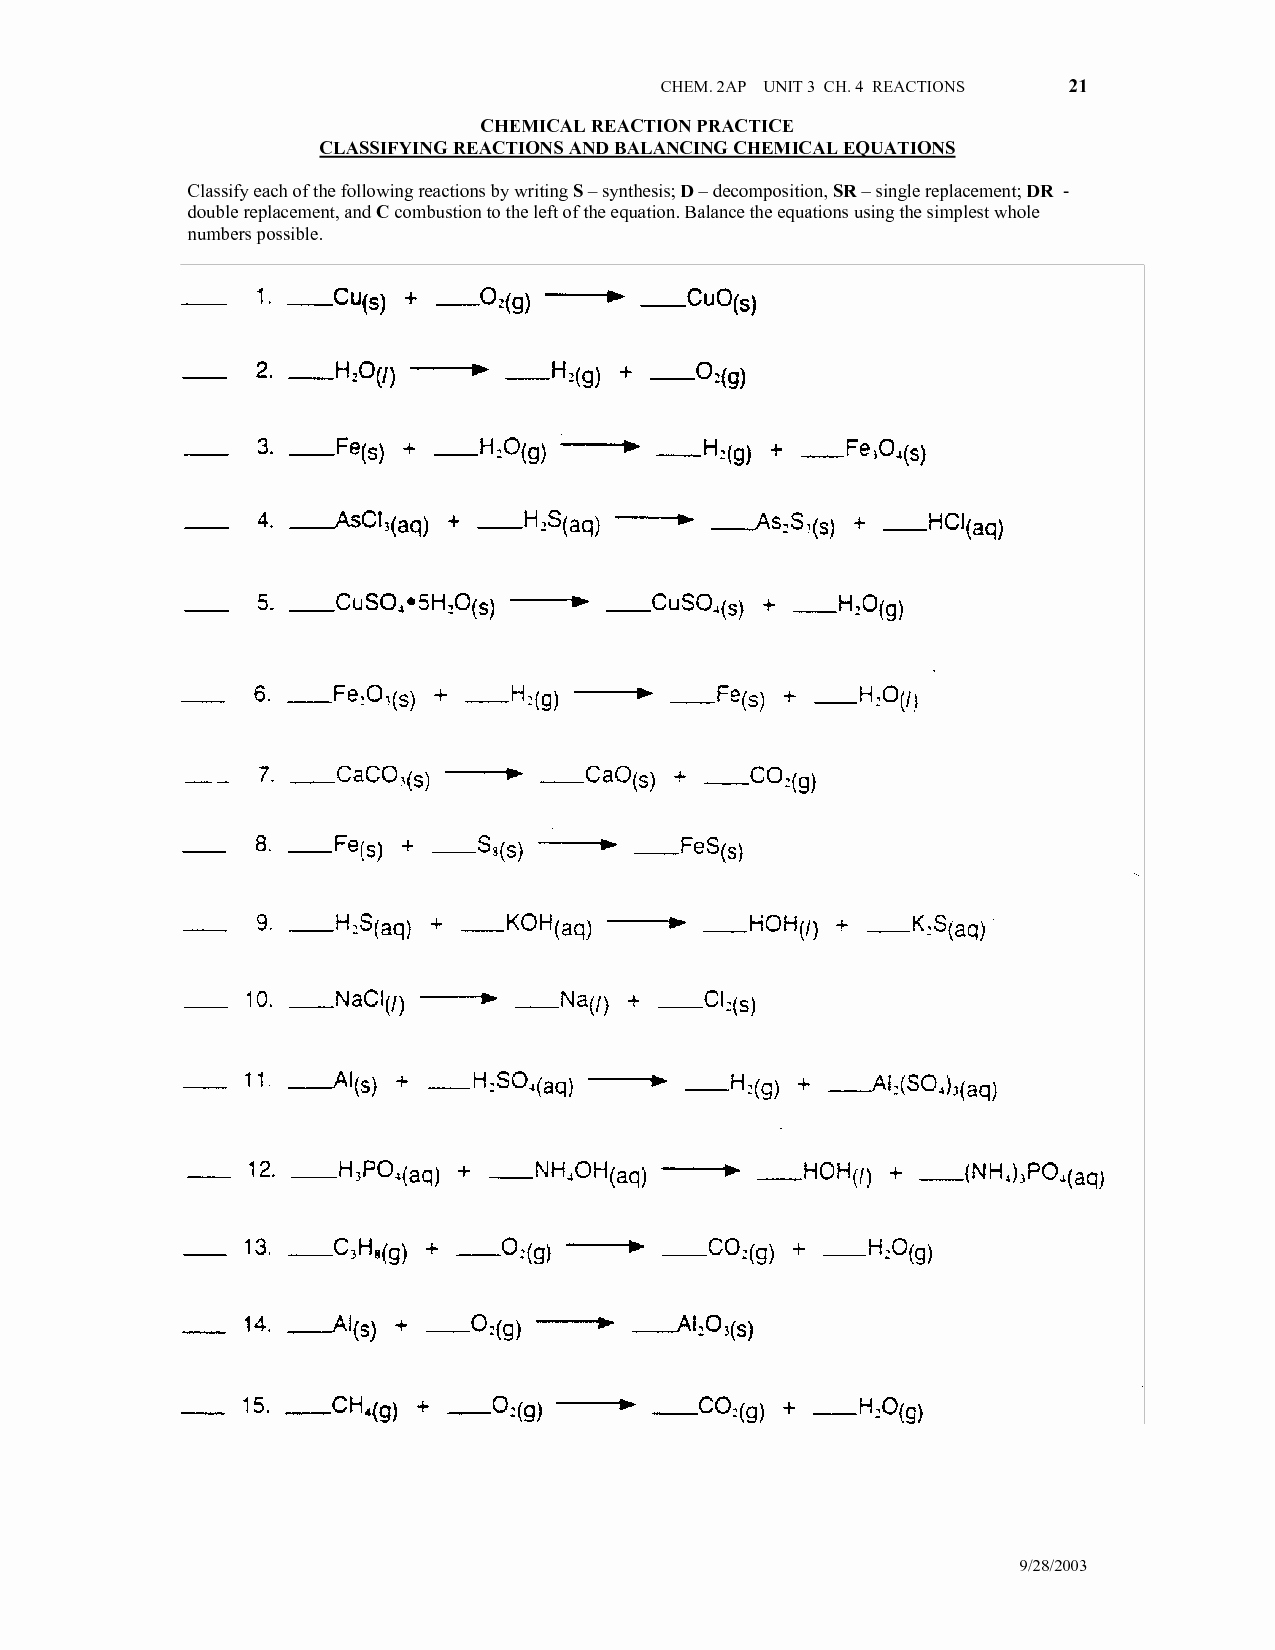 Chemical Reaction Type Worksheet Lovely 16 Best Of Types Chemical Reactions Worksheets